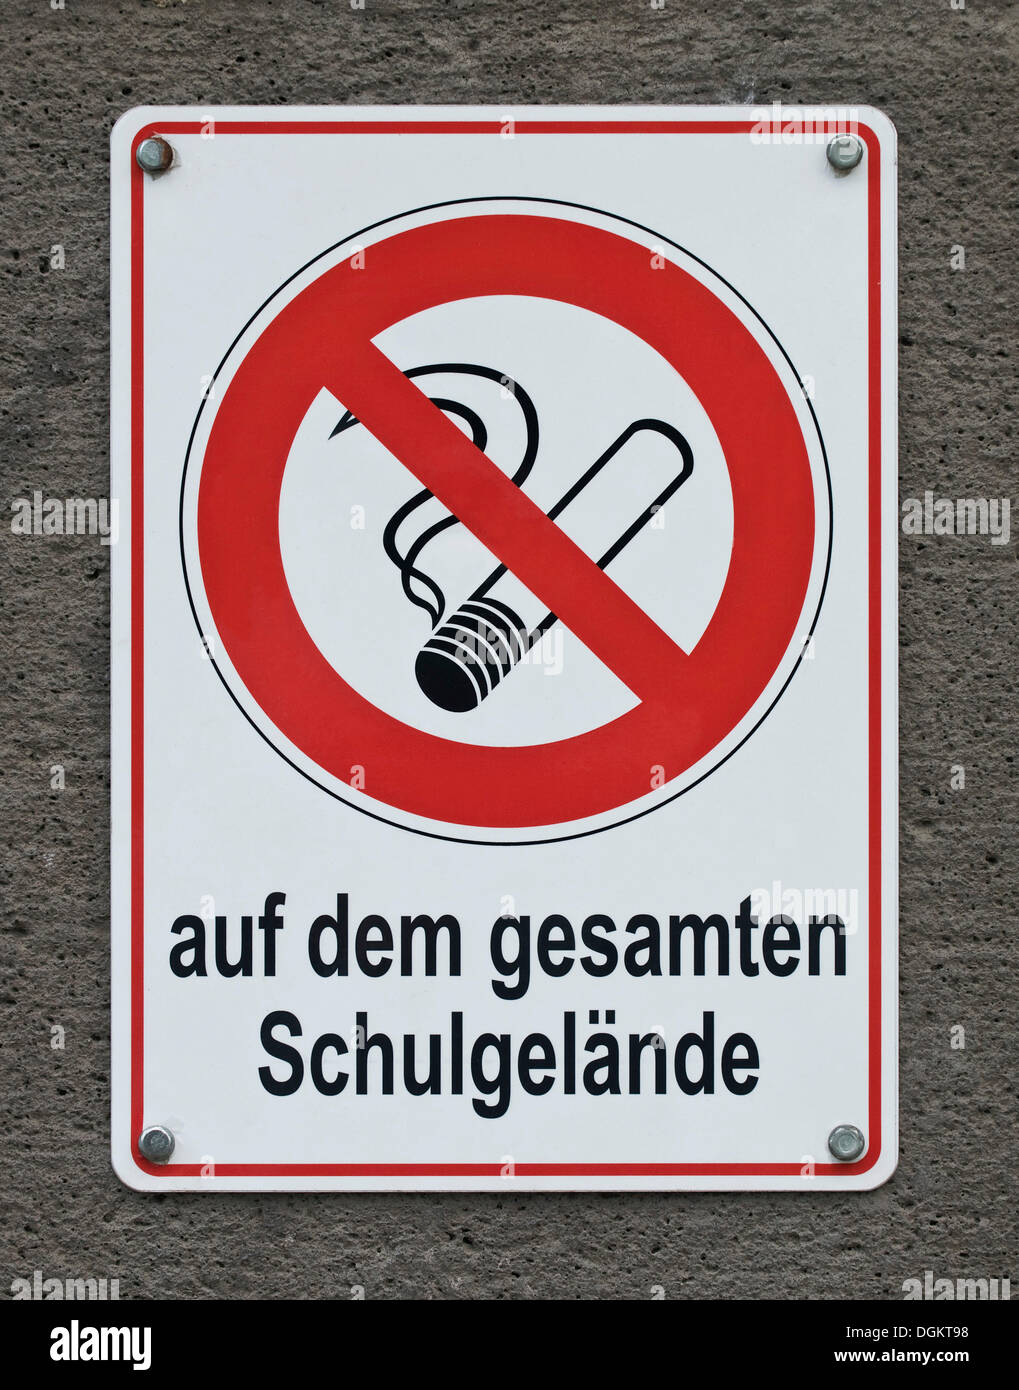 Aucun signe de fumer, lettrage "auf dem gesamten Schulgelaende', l'allemand pour "sur le terrain de l'école" Banque D'Images